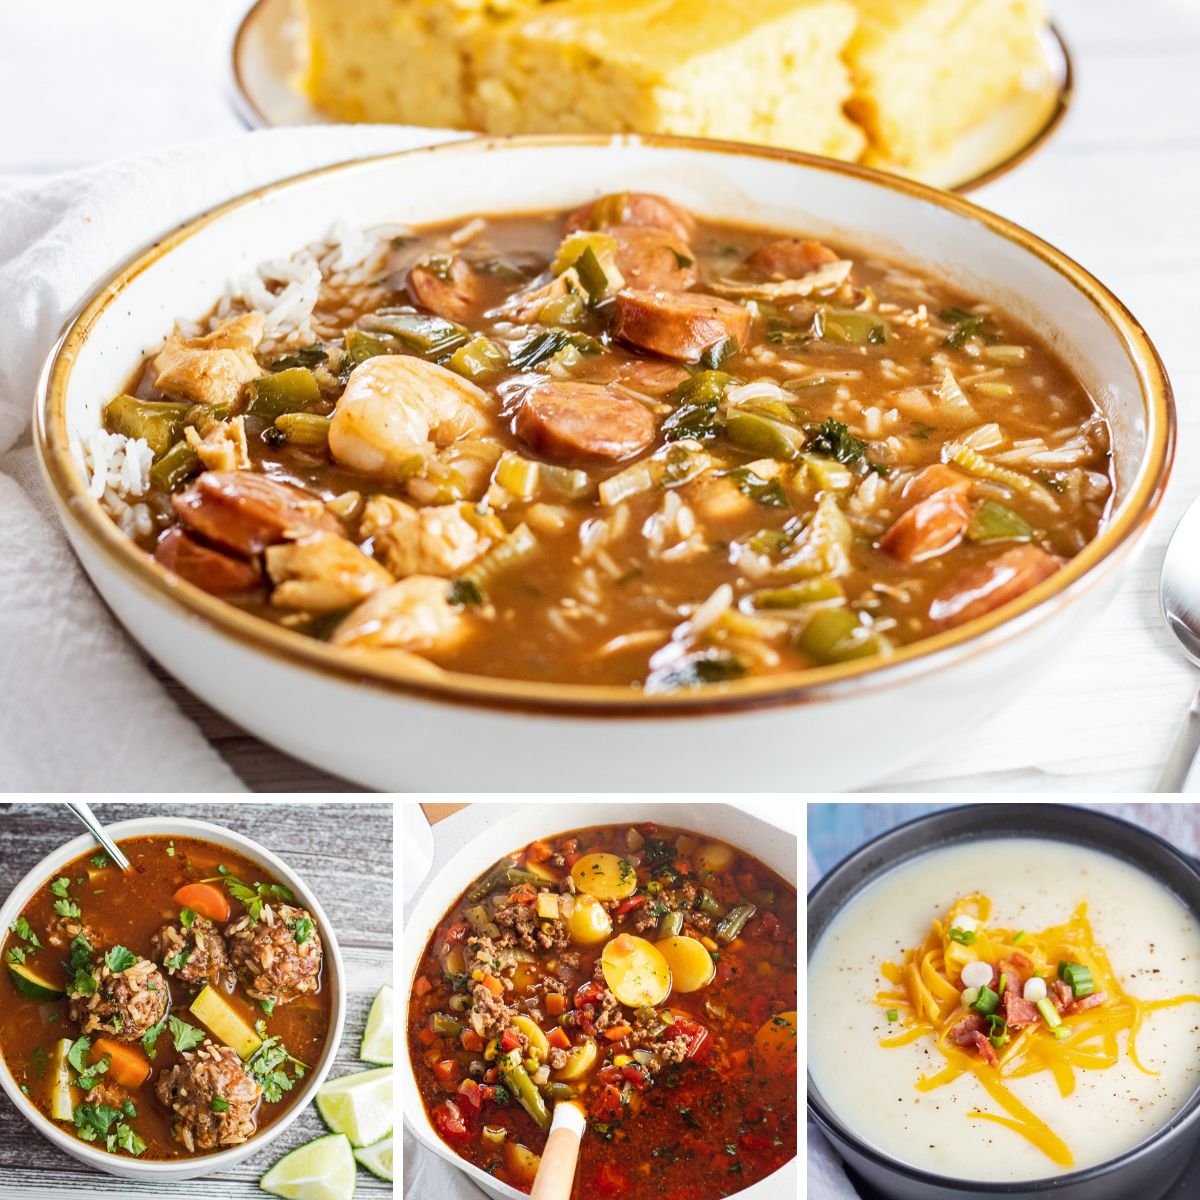 Melhor imagem de colagem de receitas de sopa de outono com 4 sopas de comida de conforto aconchegantes para se aquecer.